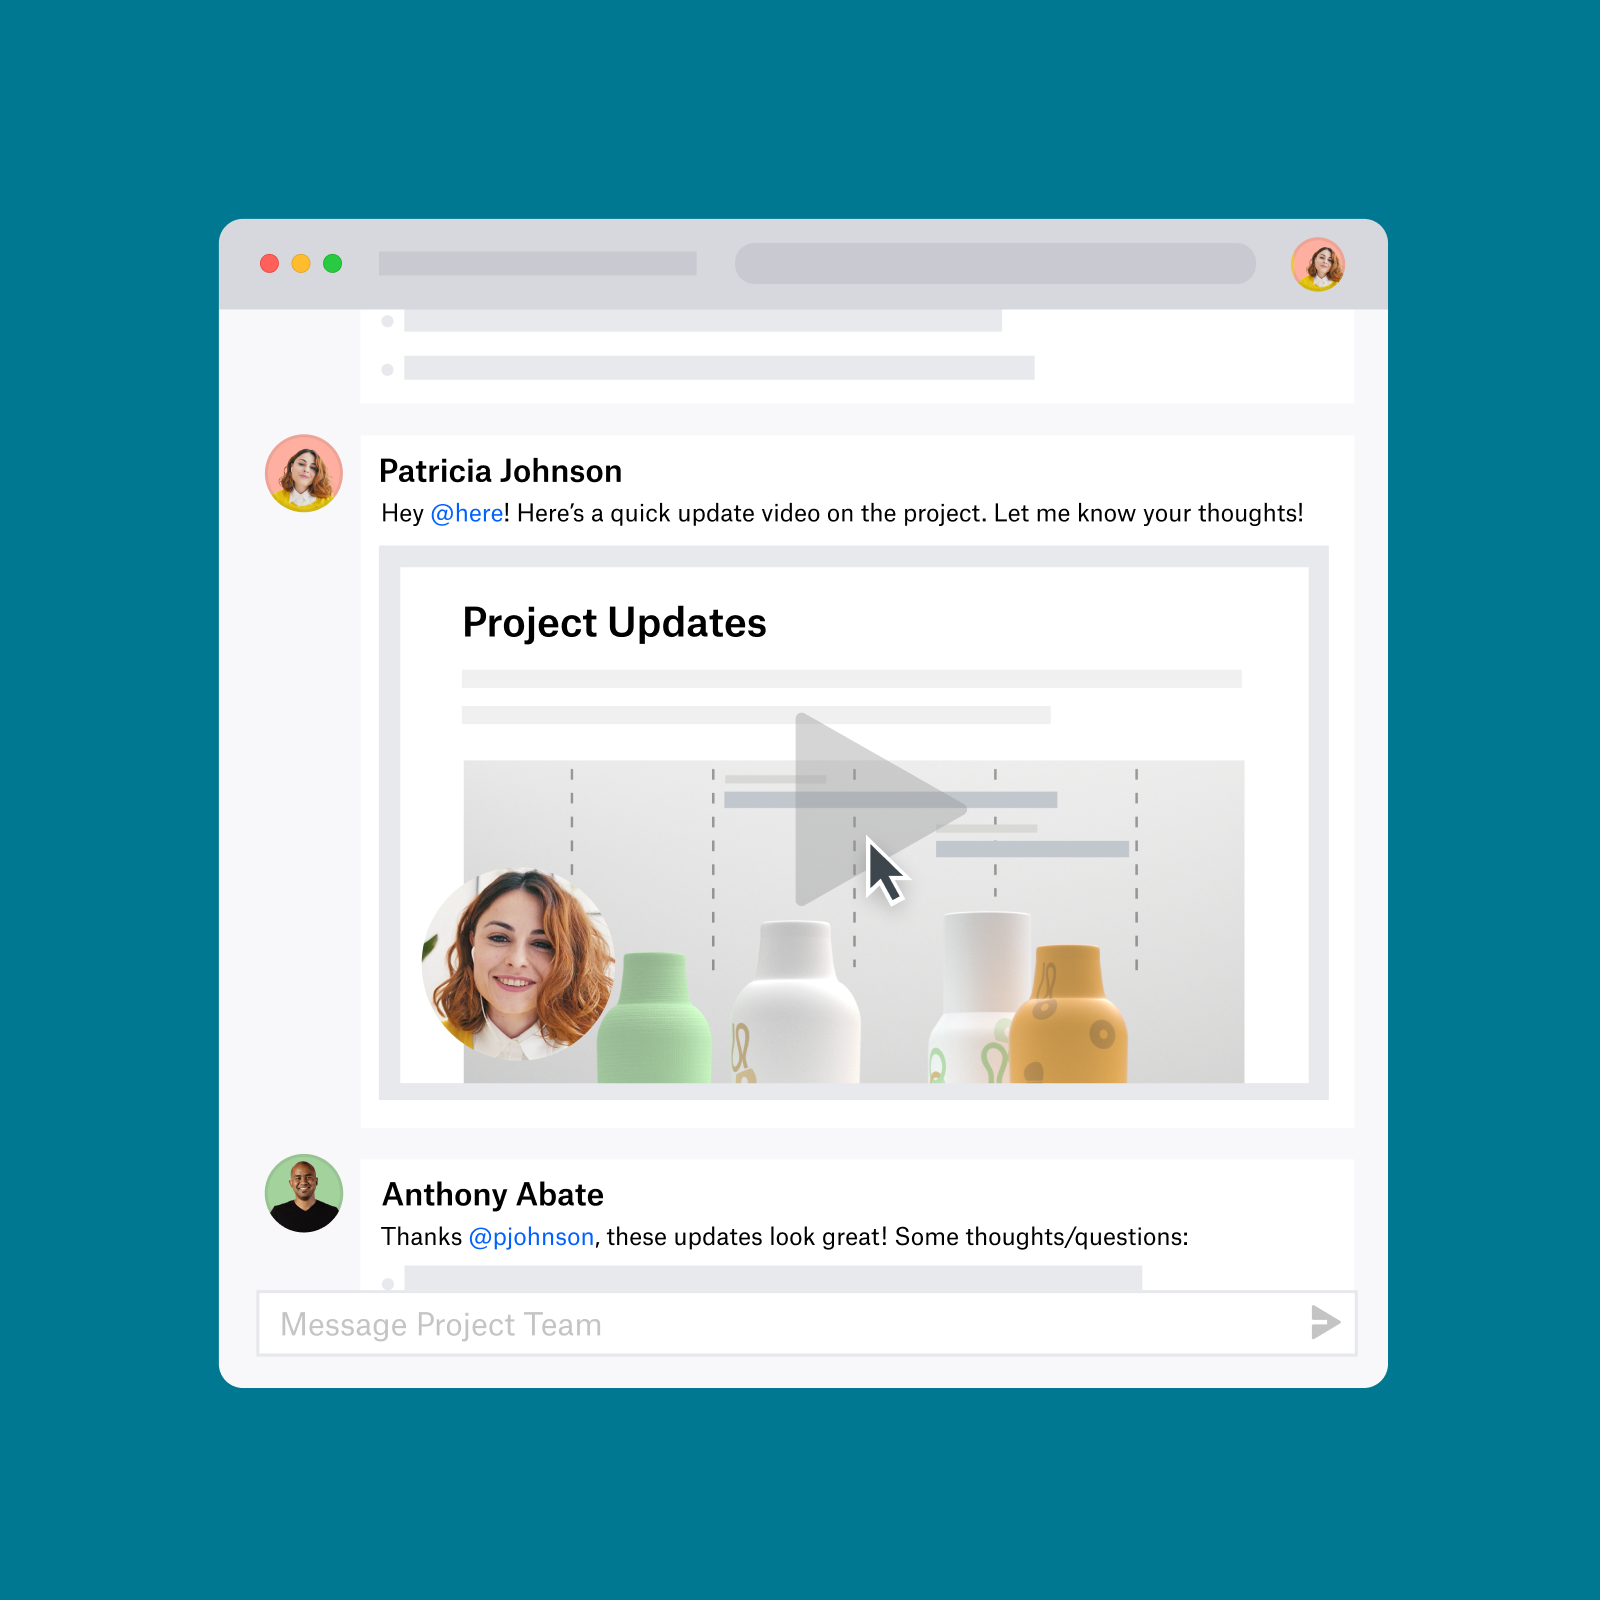 Interface utilisateur avec une personne partageant une vidéo sur l'avancement d'un projet dans un document partagé